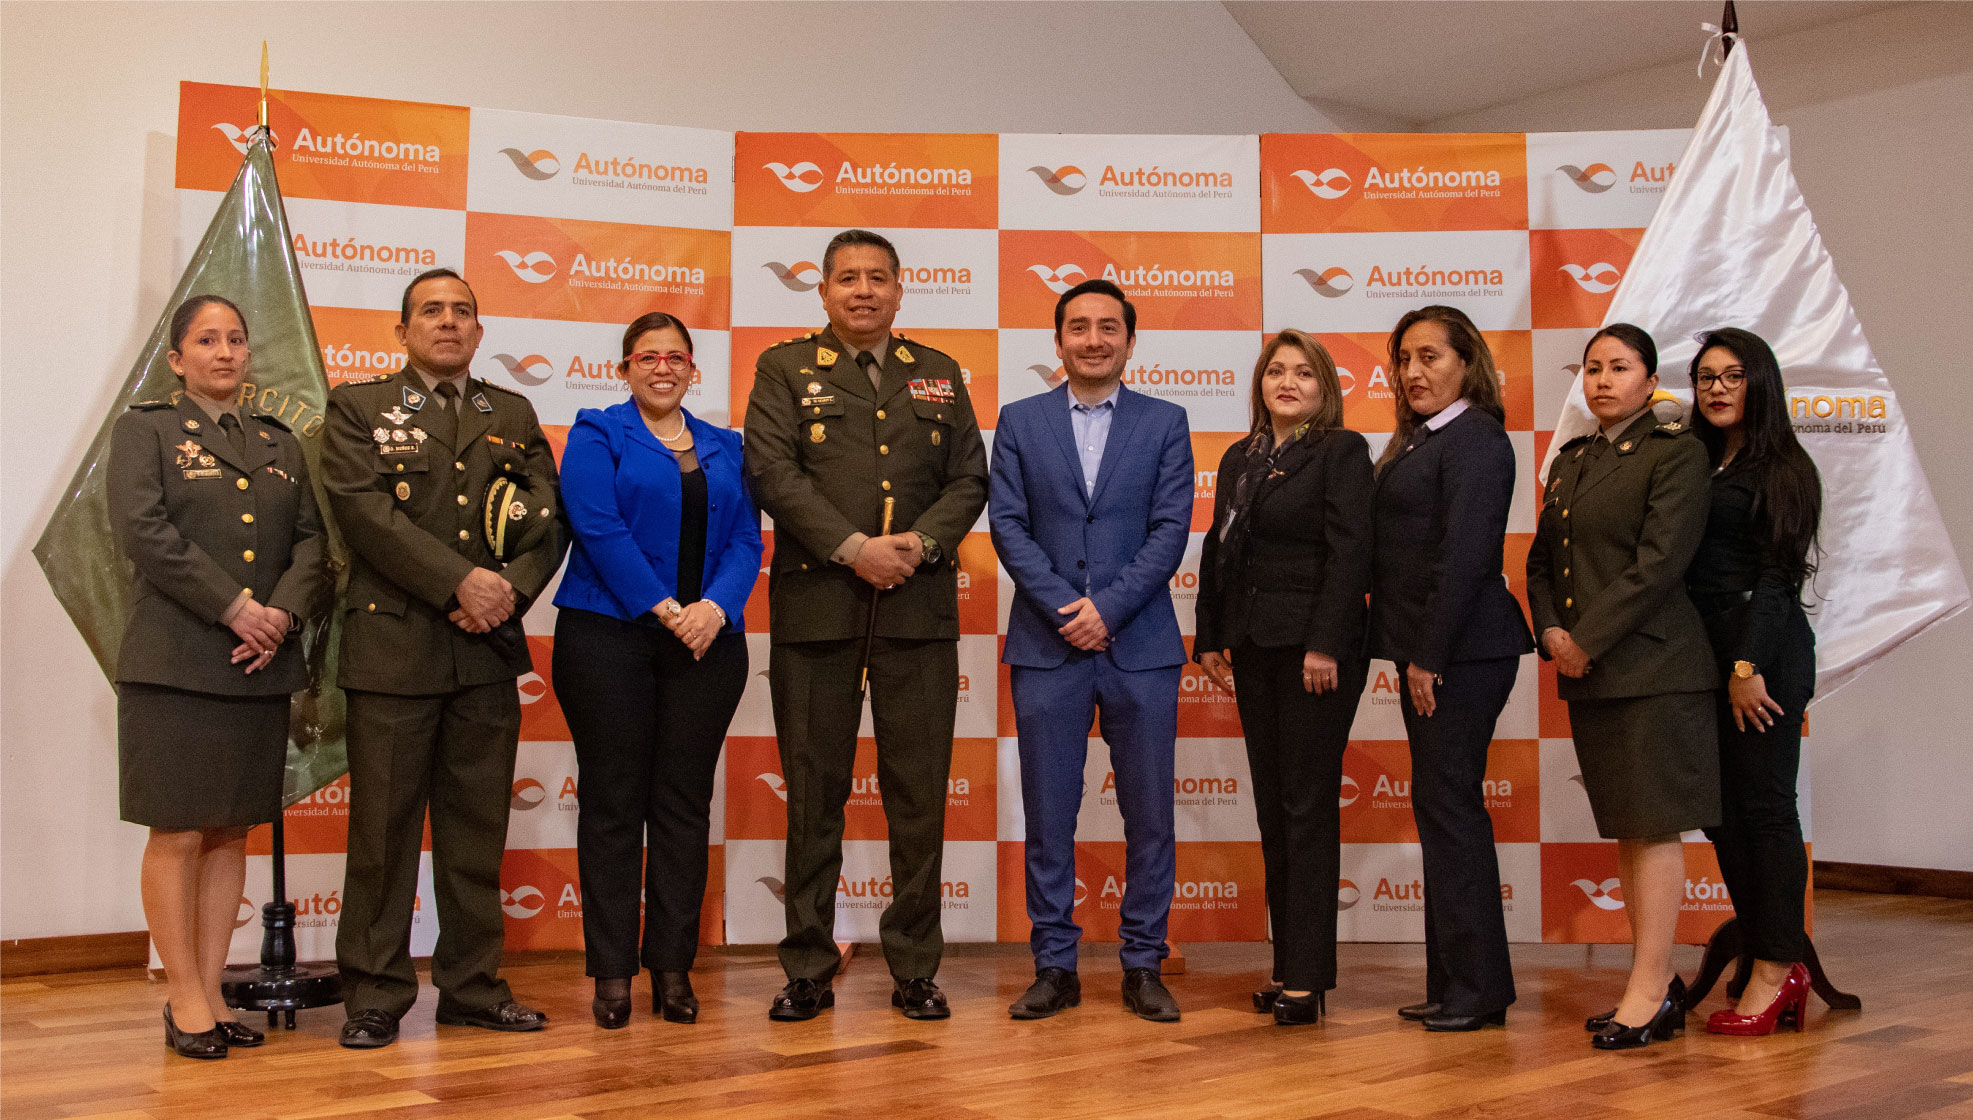 La Universidad Autónoma del Perú firmó convenio con el Ejército del Perú